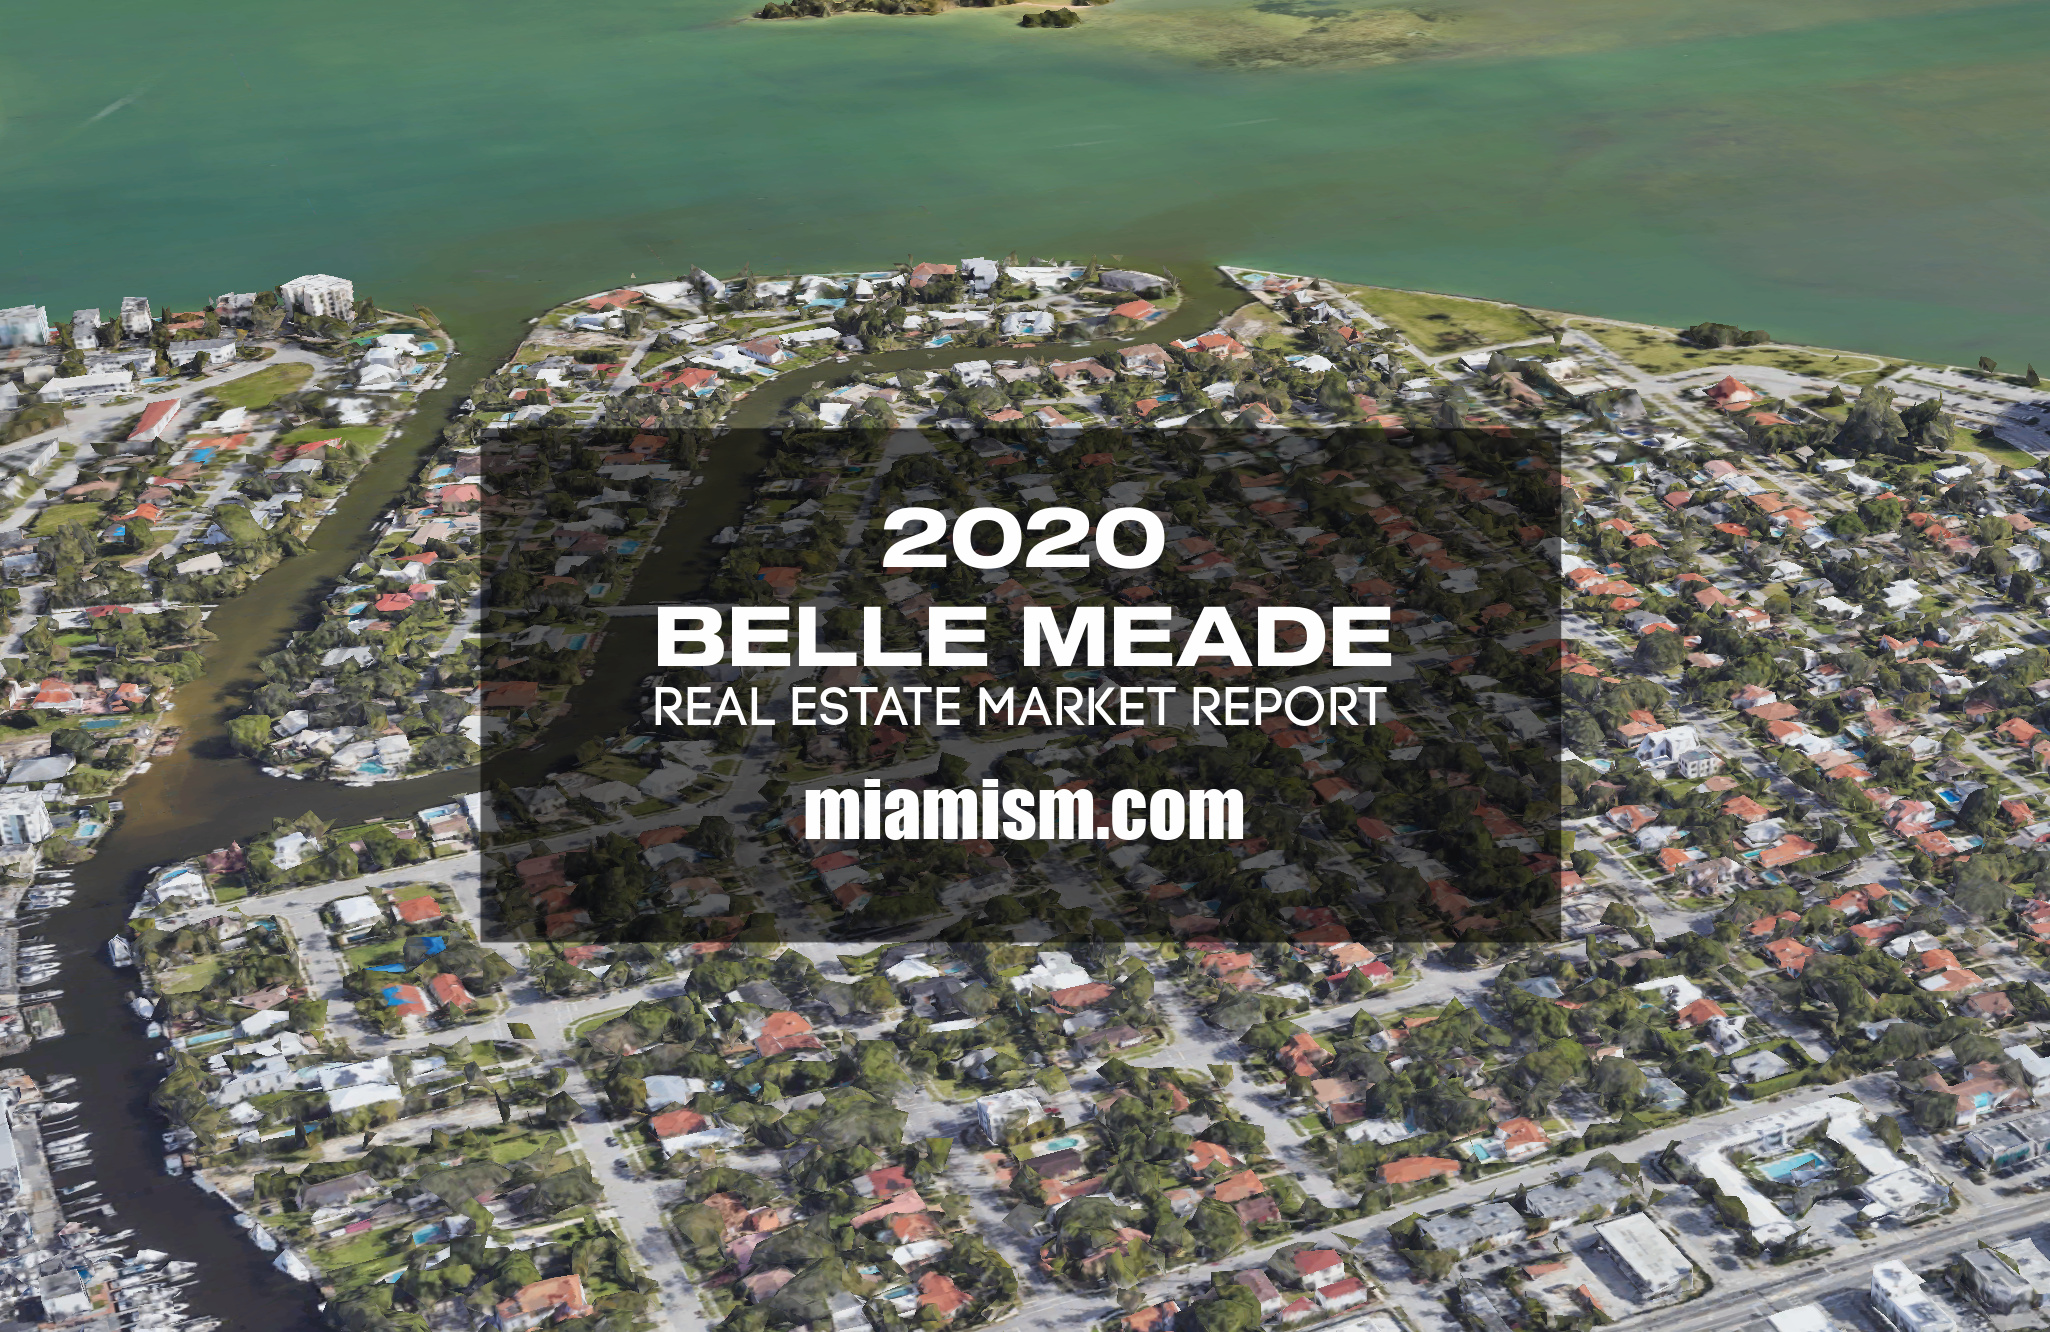 belle-meade-real-estate-market-report-2020